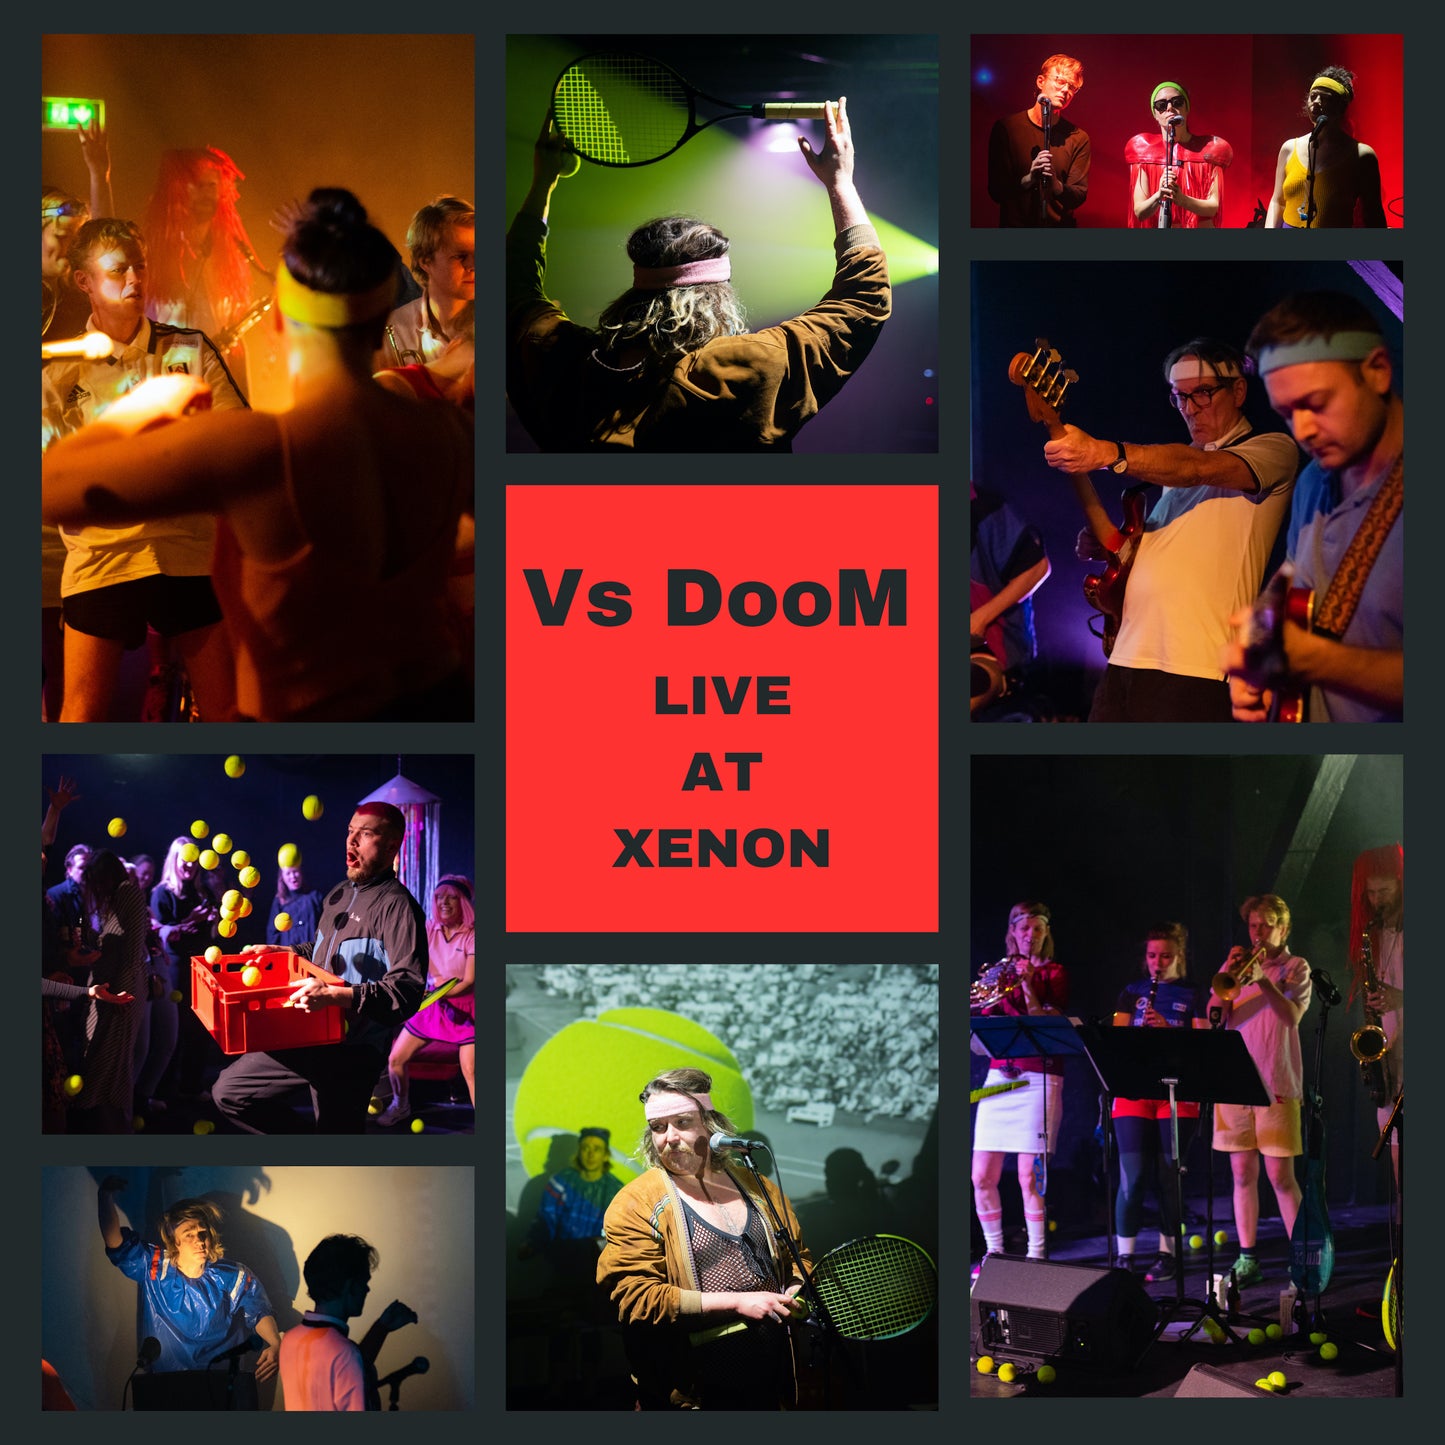 Vs DooM: Live at Xenon